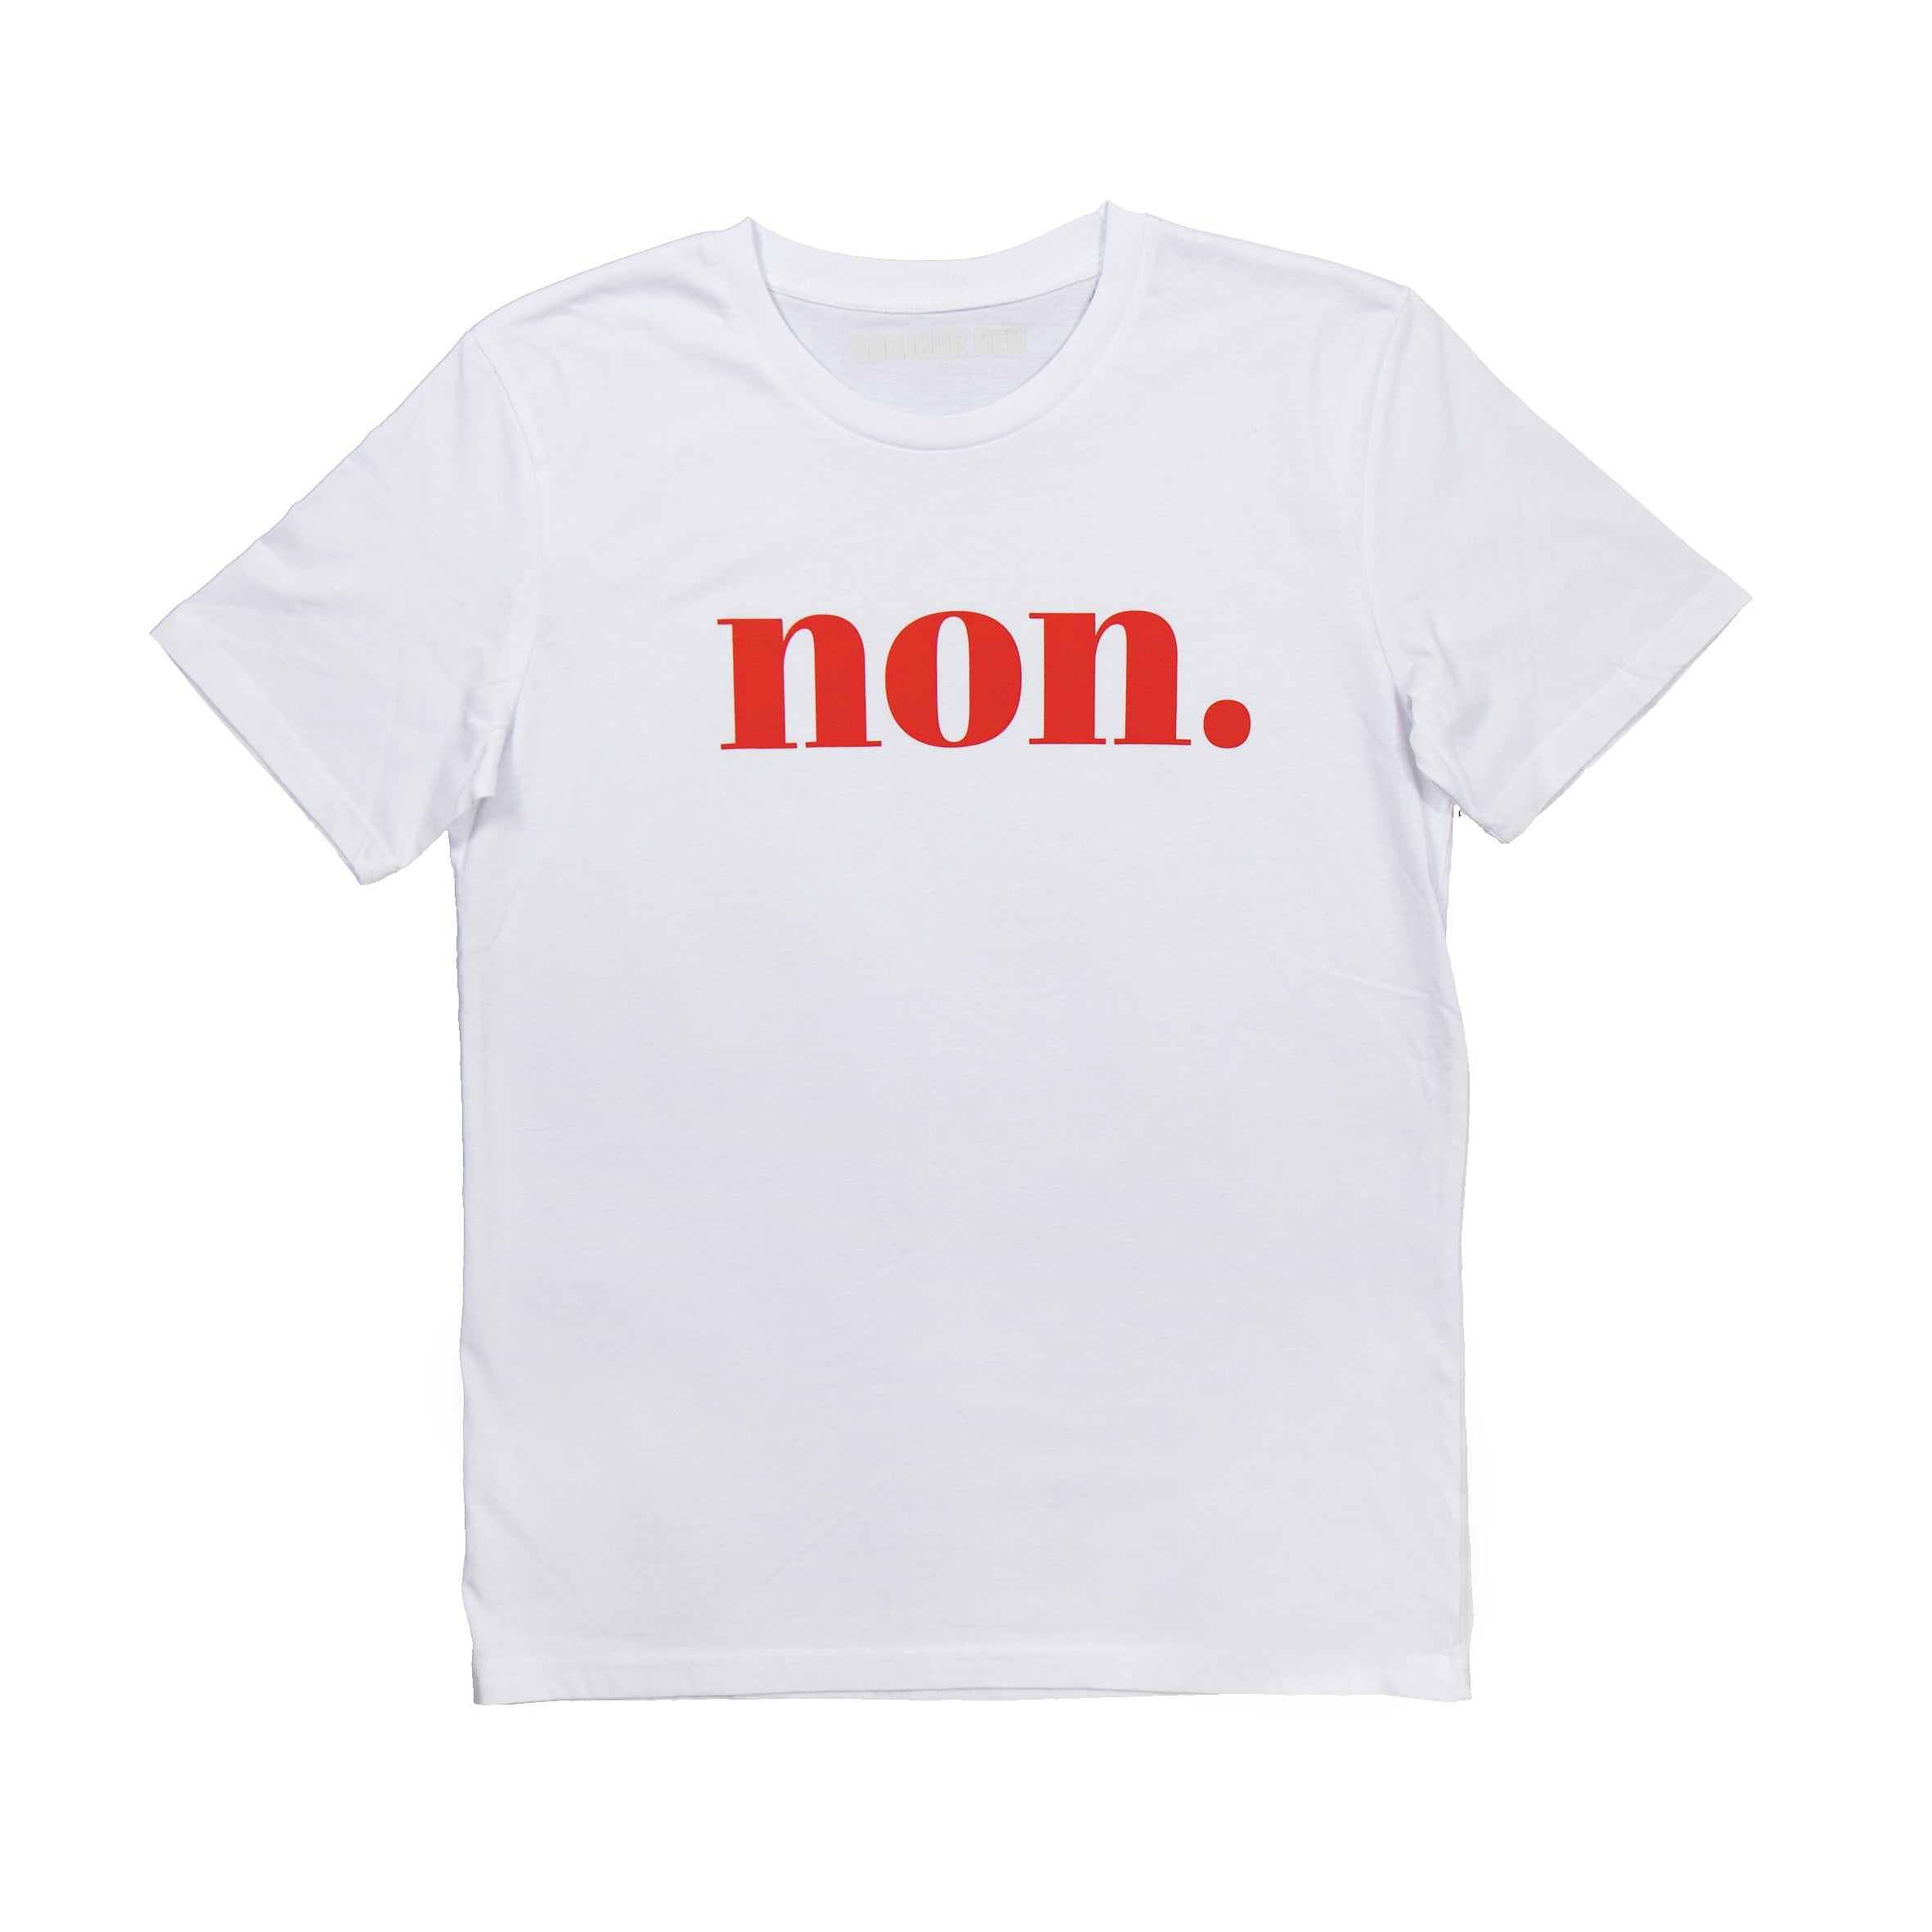 Bonjour Weiß/Rot - – T-Shirt Non. Ben